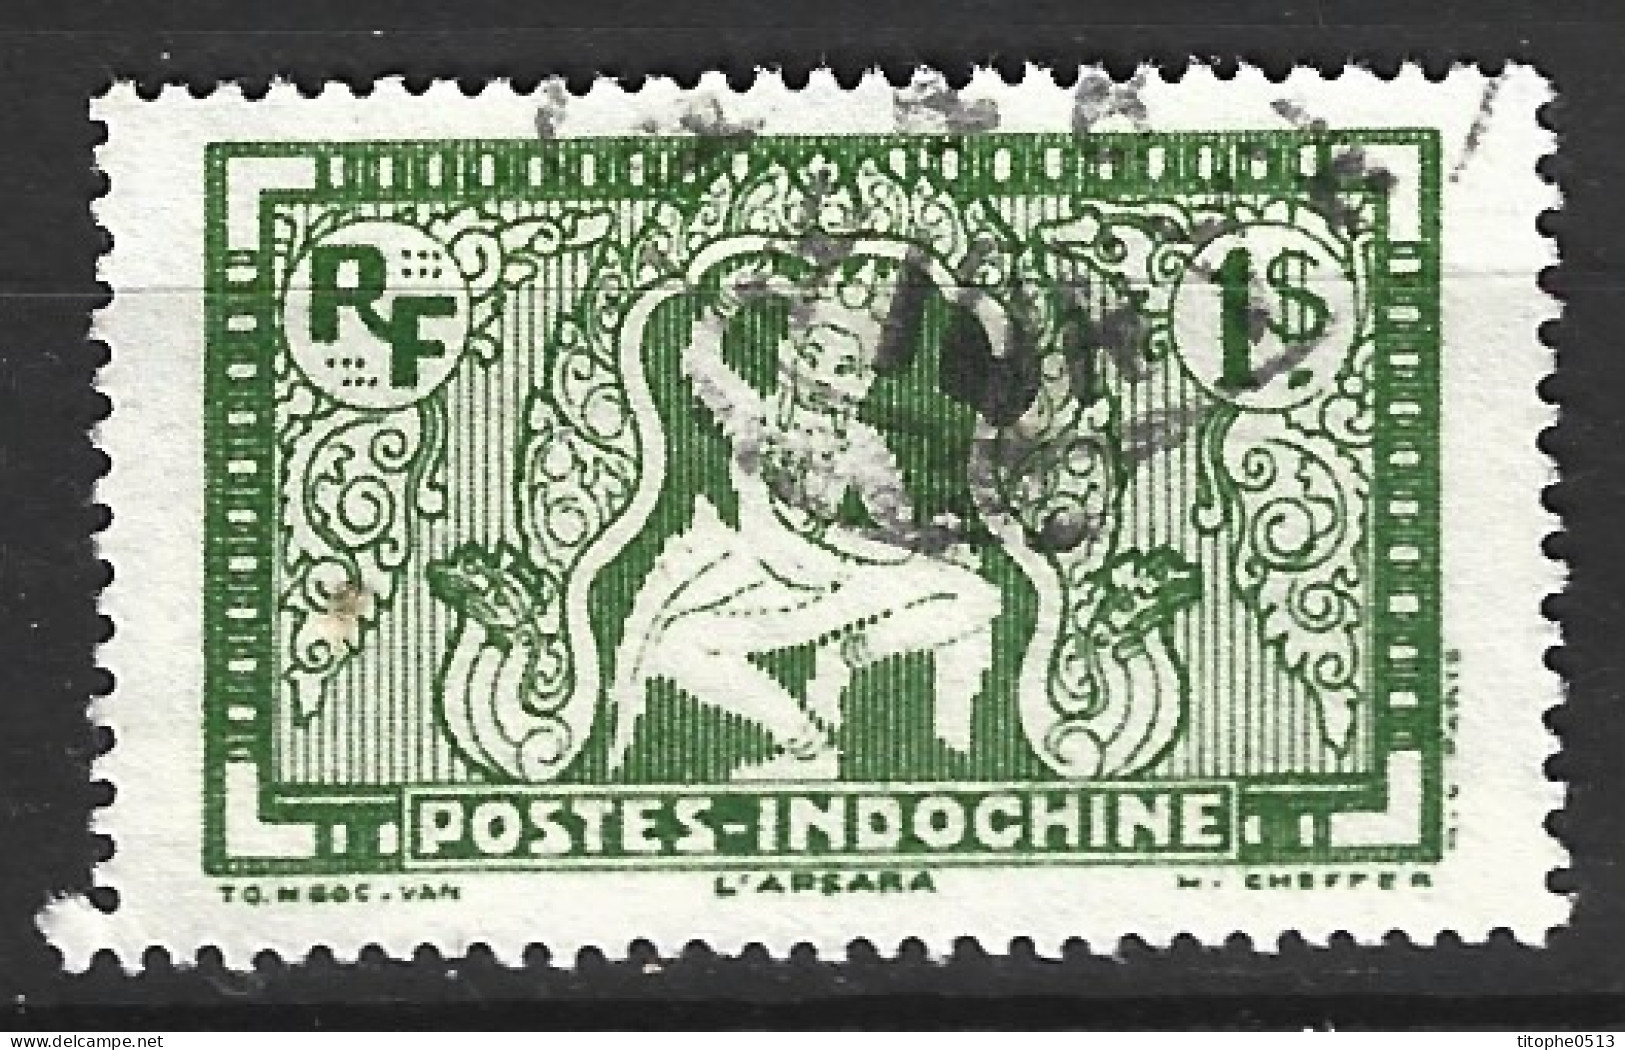 INDOCHINE. N°169 Oblitéré De 1931-9. Nymphe Céleste/Apsara. - Hinduism